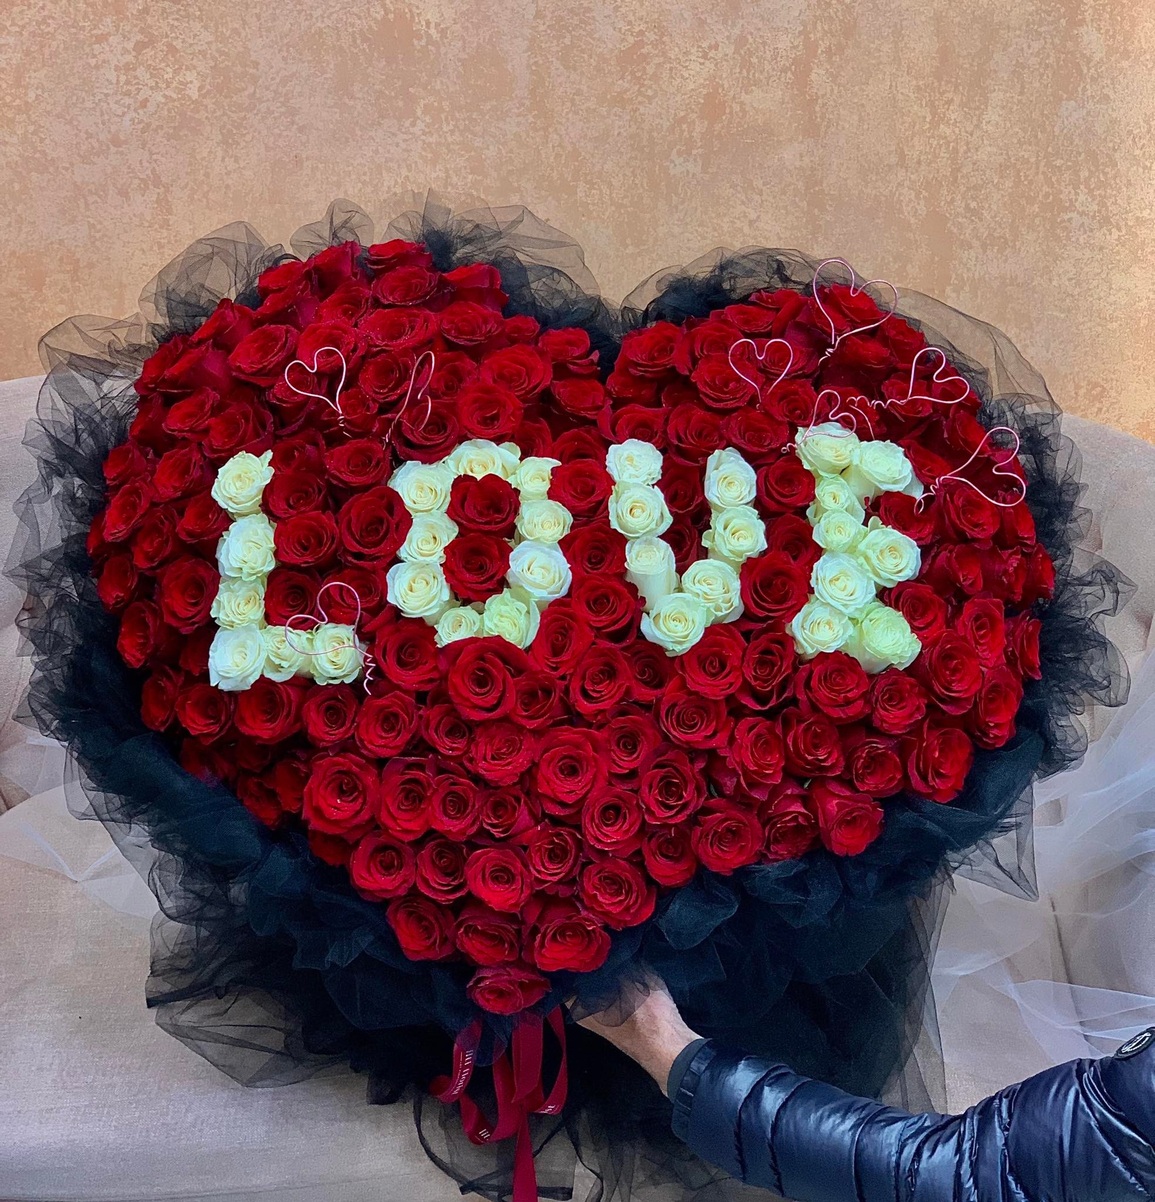 Ngày Valentine, phụ nữ thích nhận bó hoa 20 triệu đồng hay tiền mặt? | Báo  Dân trí